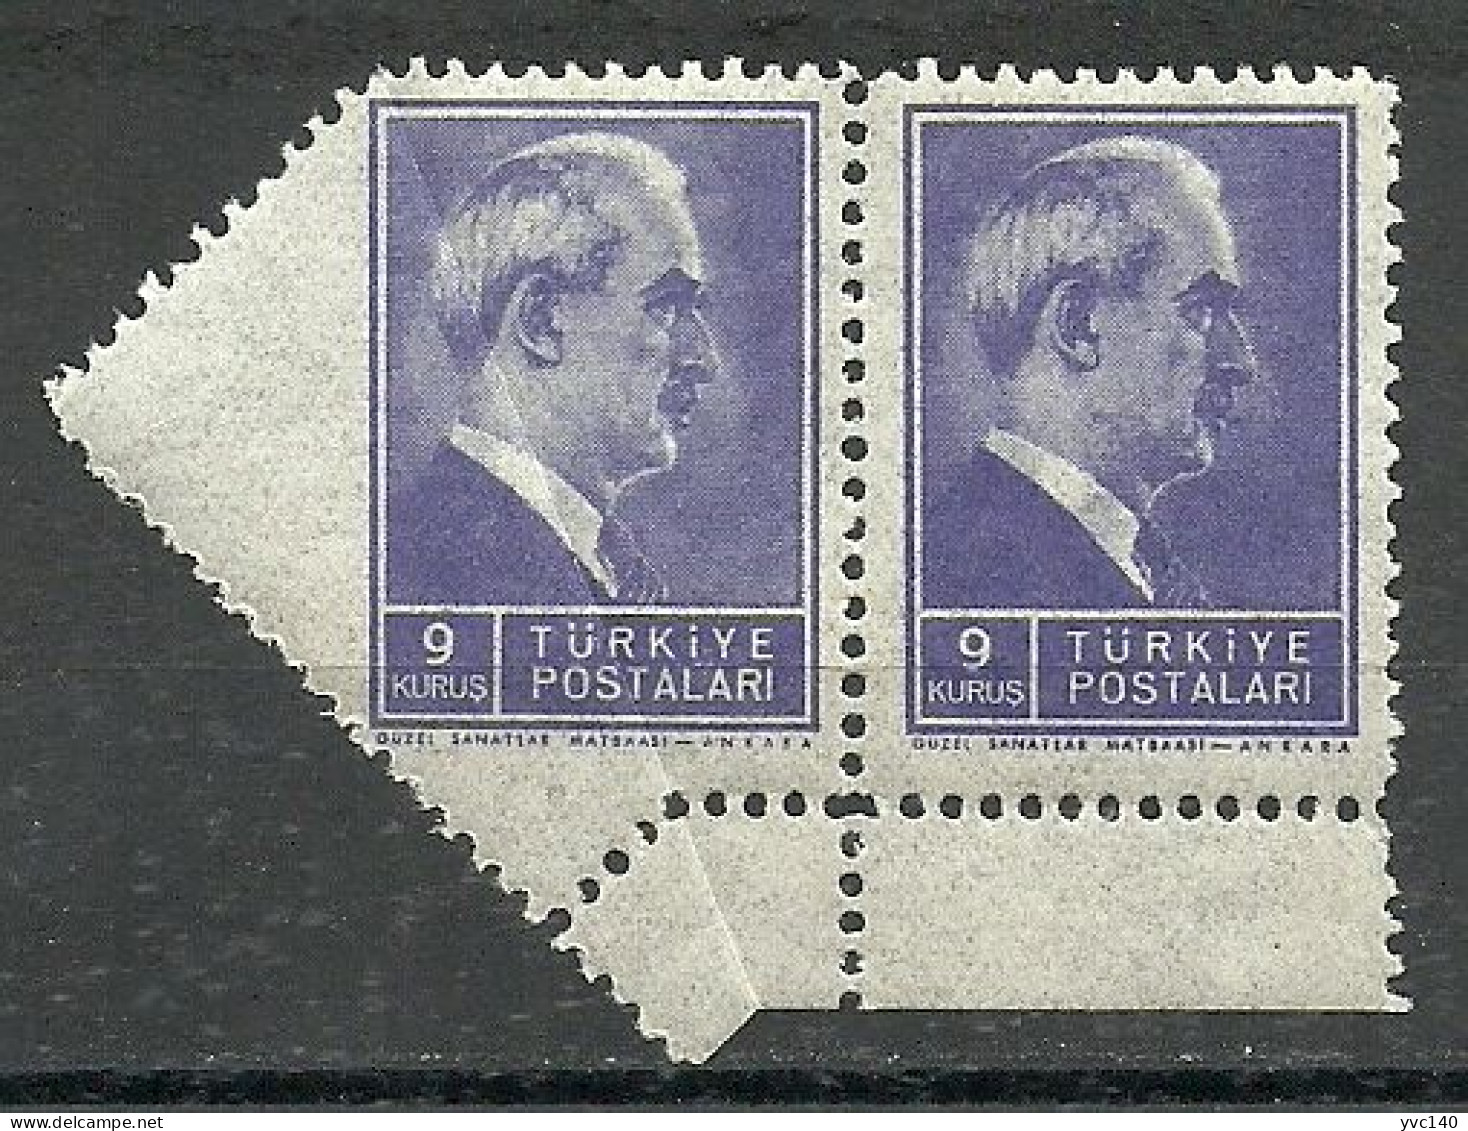 Turkey; 1942 1st Inonu Issue 9 K. ERROR "Perforation On Folded Paper" - Unused Stamps